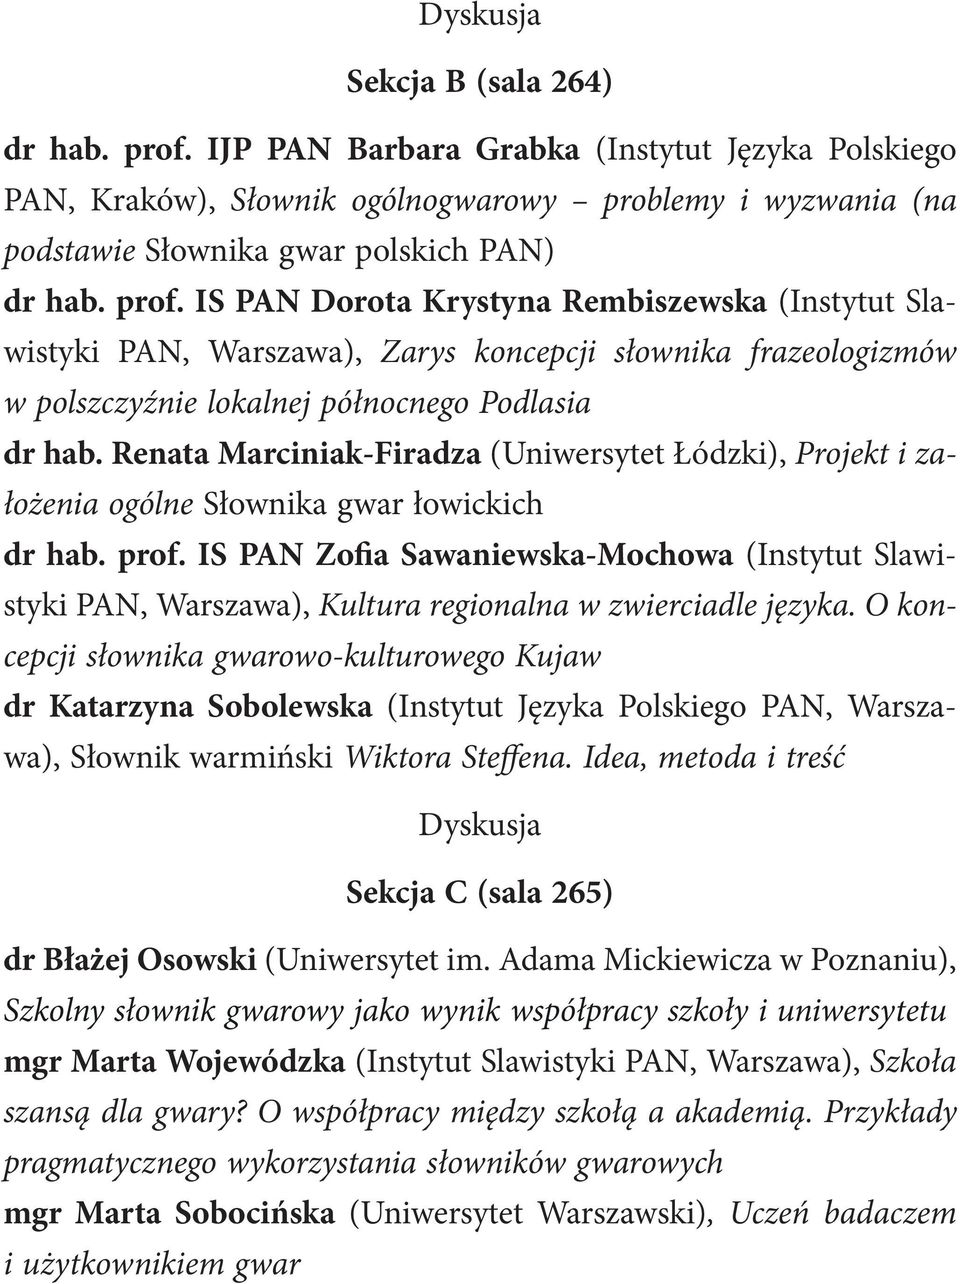 IS PAN Zofia Sawaniewska-Mochowa (Instytut Slawistyki PAN, Warszawa), Kultura regionalna w zwierciadle języka.